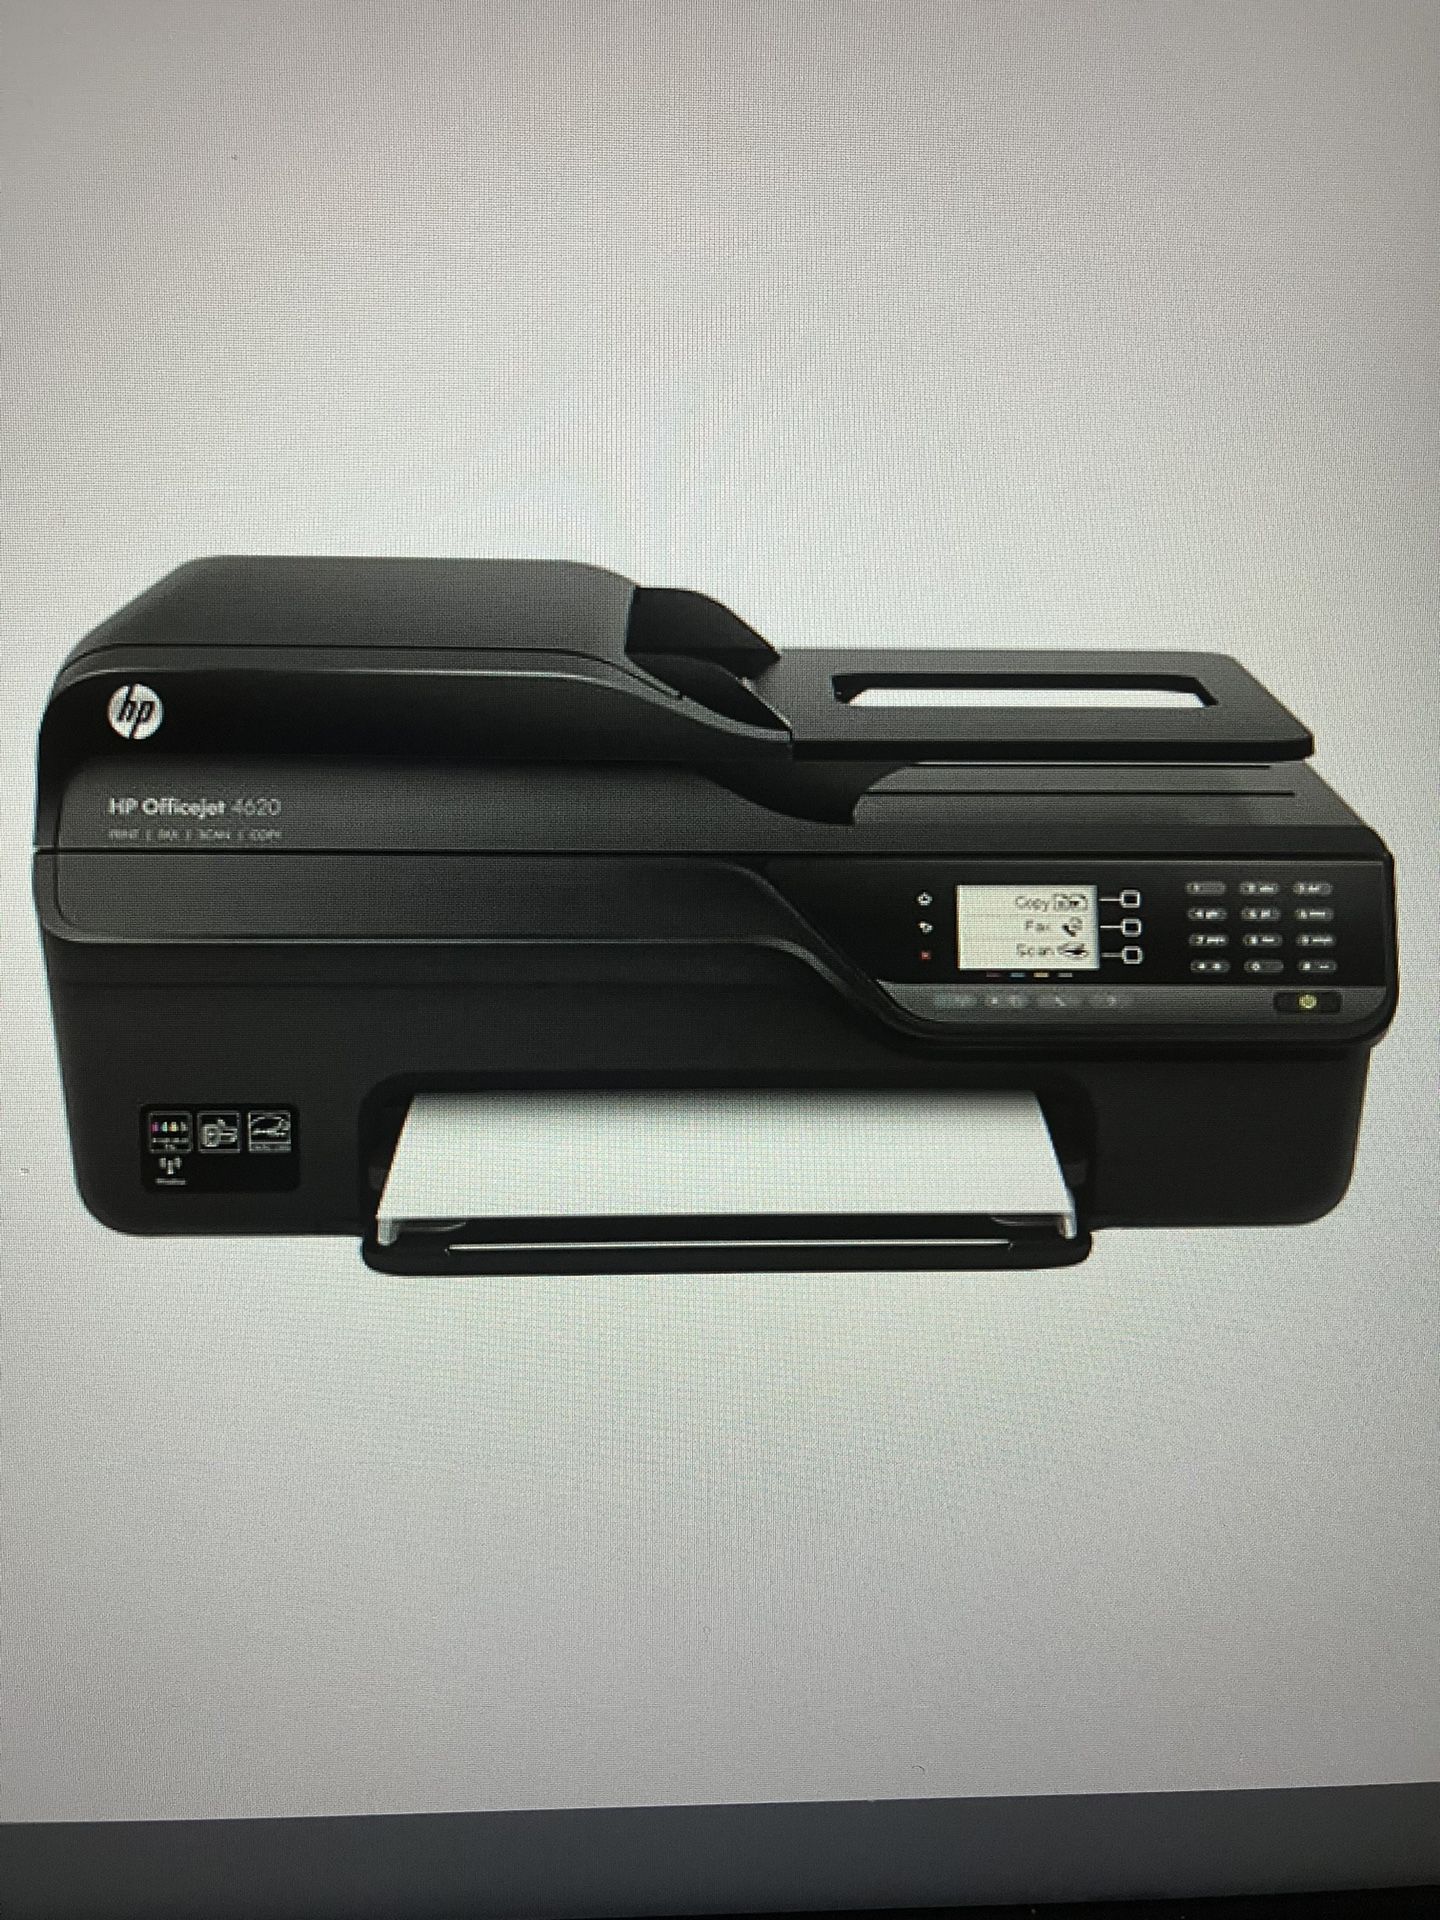 HP Officejet 4620 Wireless Printer